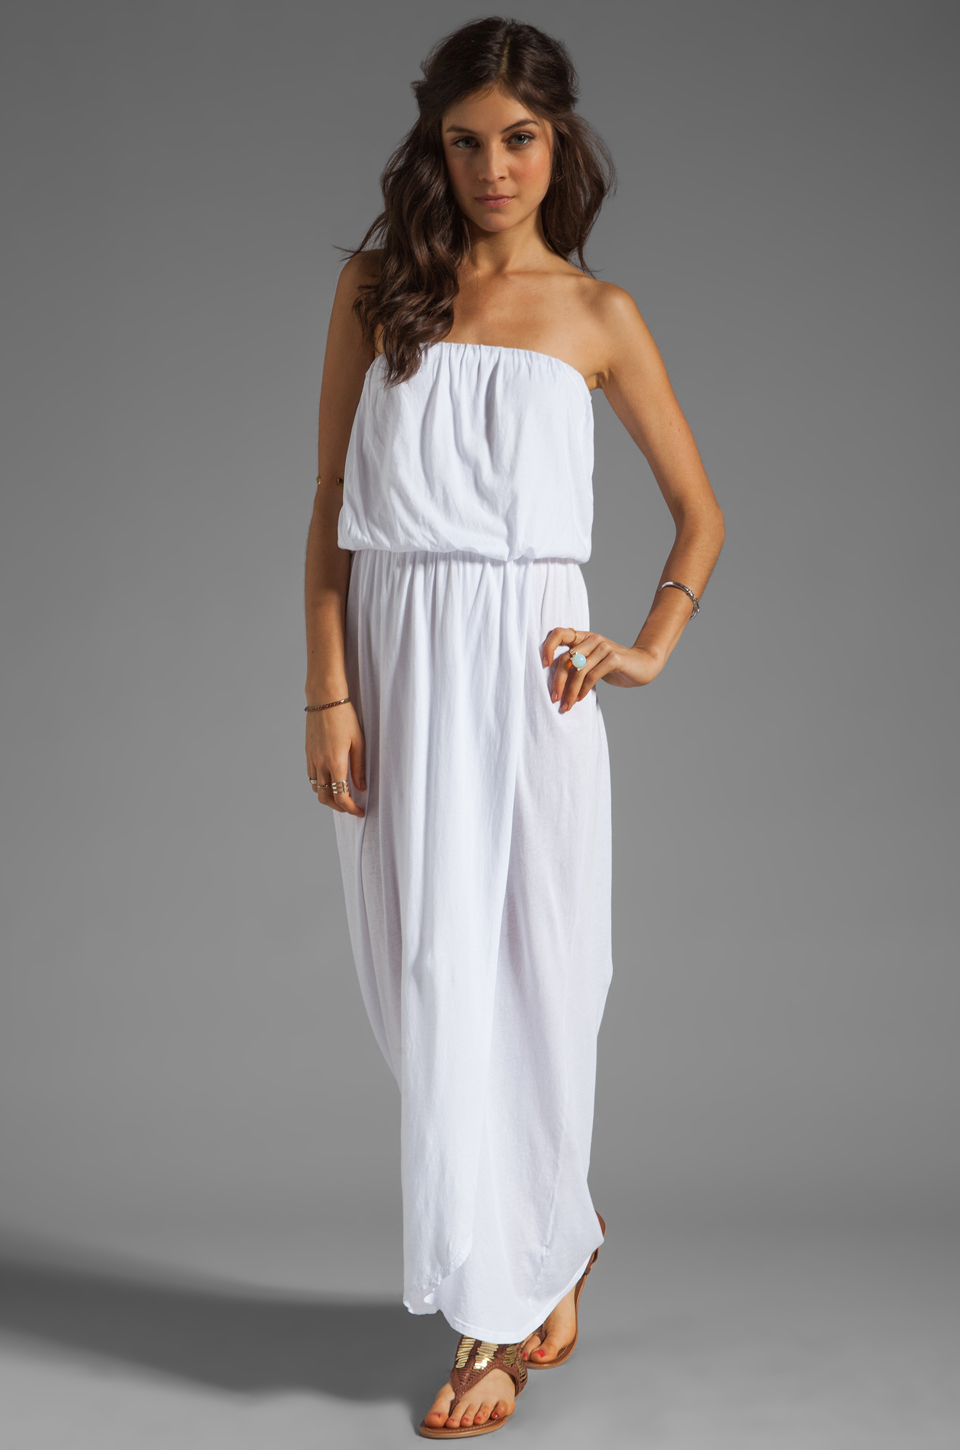 Velvet by graham & spencer Shivan Sheer Jersey Maxi Dress in White | Lyst